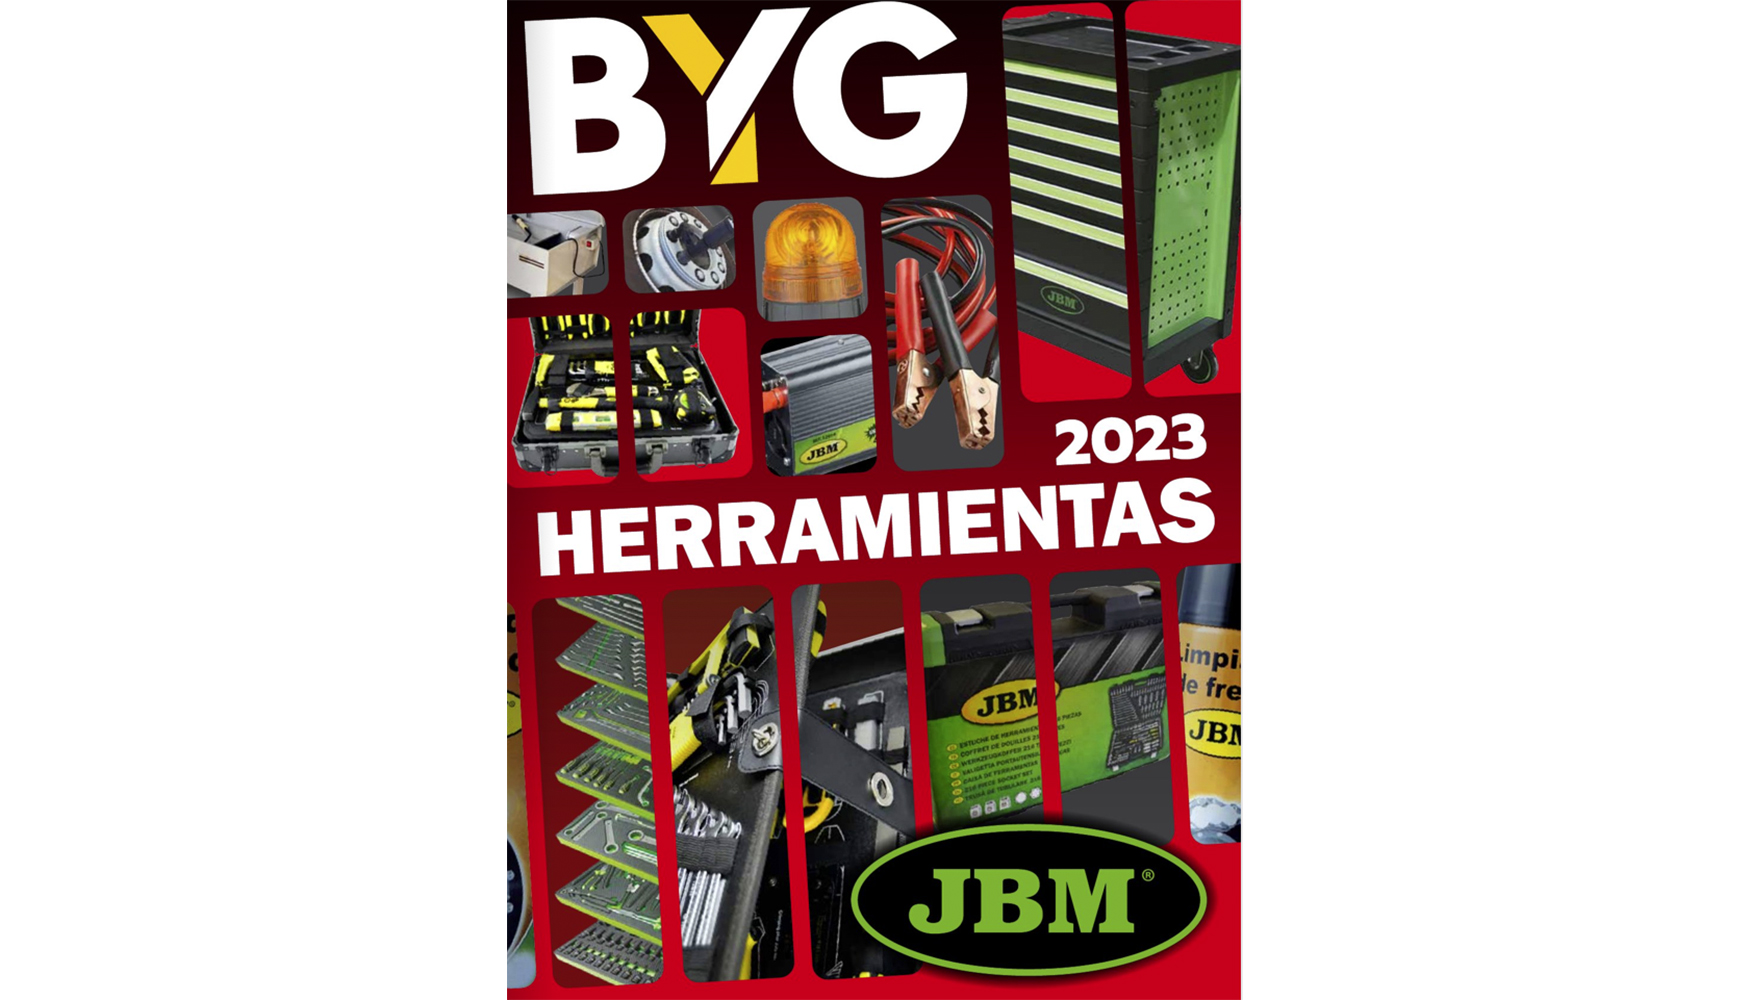 Herramientas JBM by BYG S.A. - Issuu